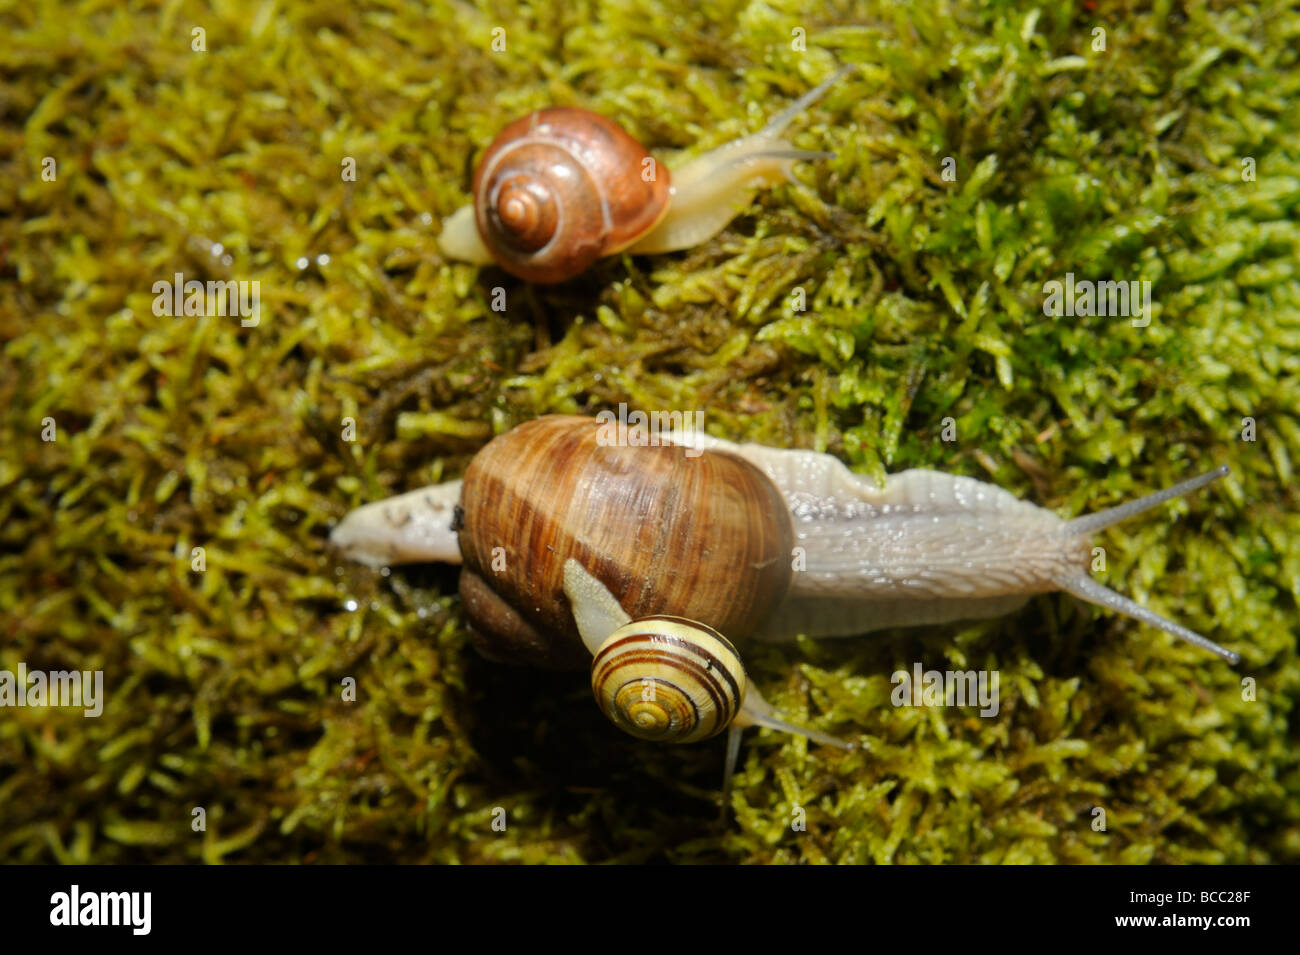 Snail Snails on moss Stock Photo